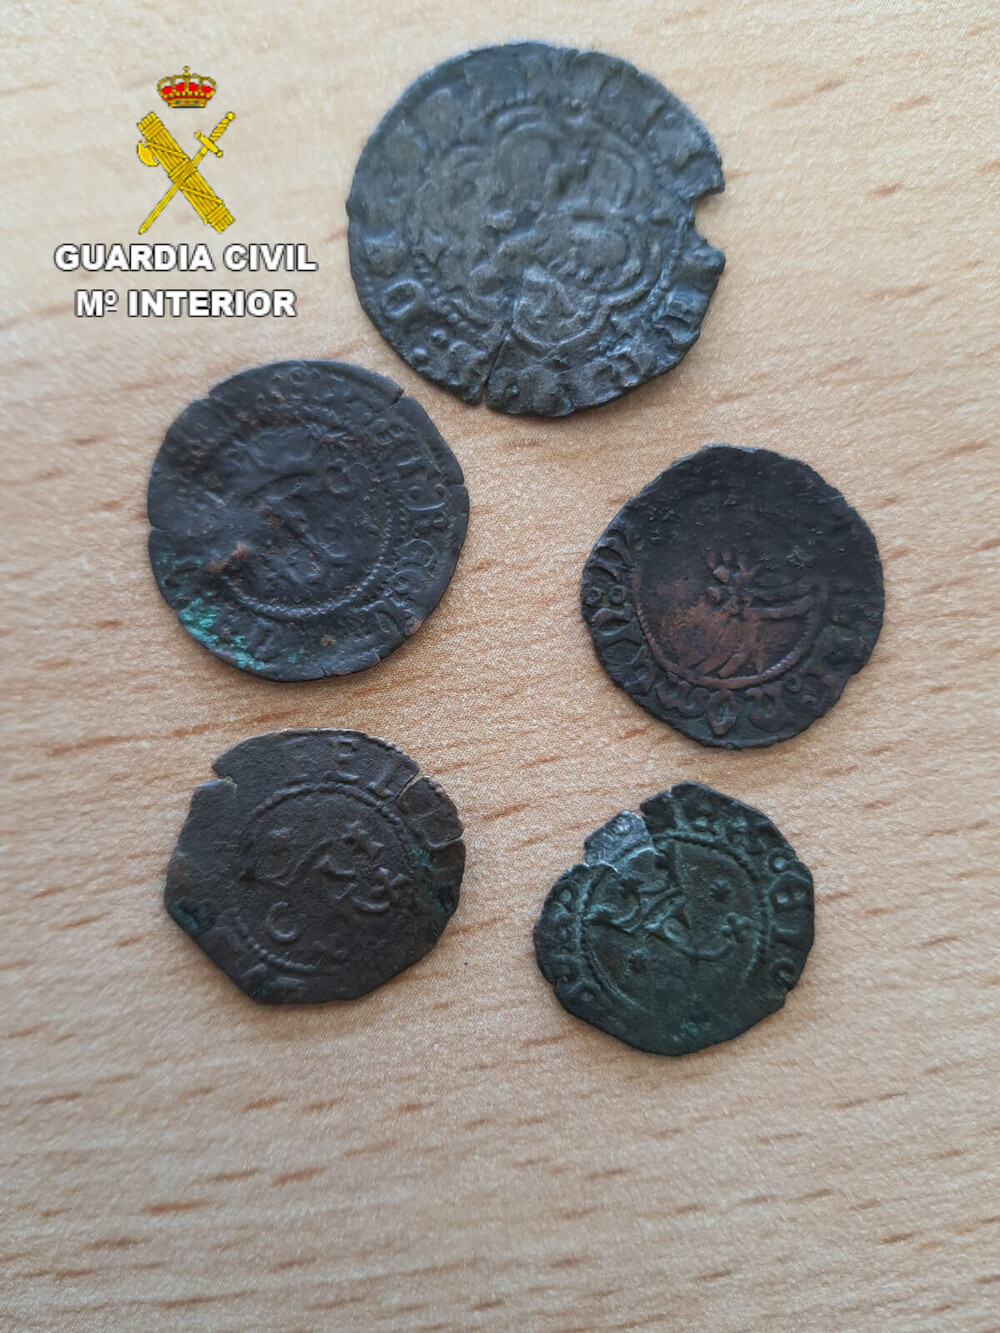 Investigado por vender monedas antiguas expoliadas